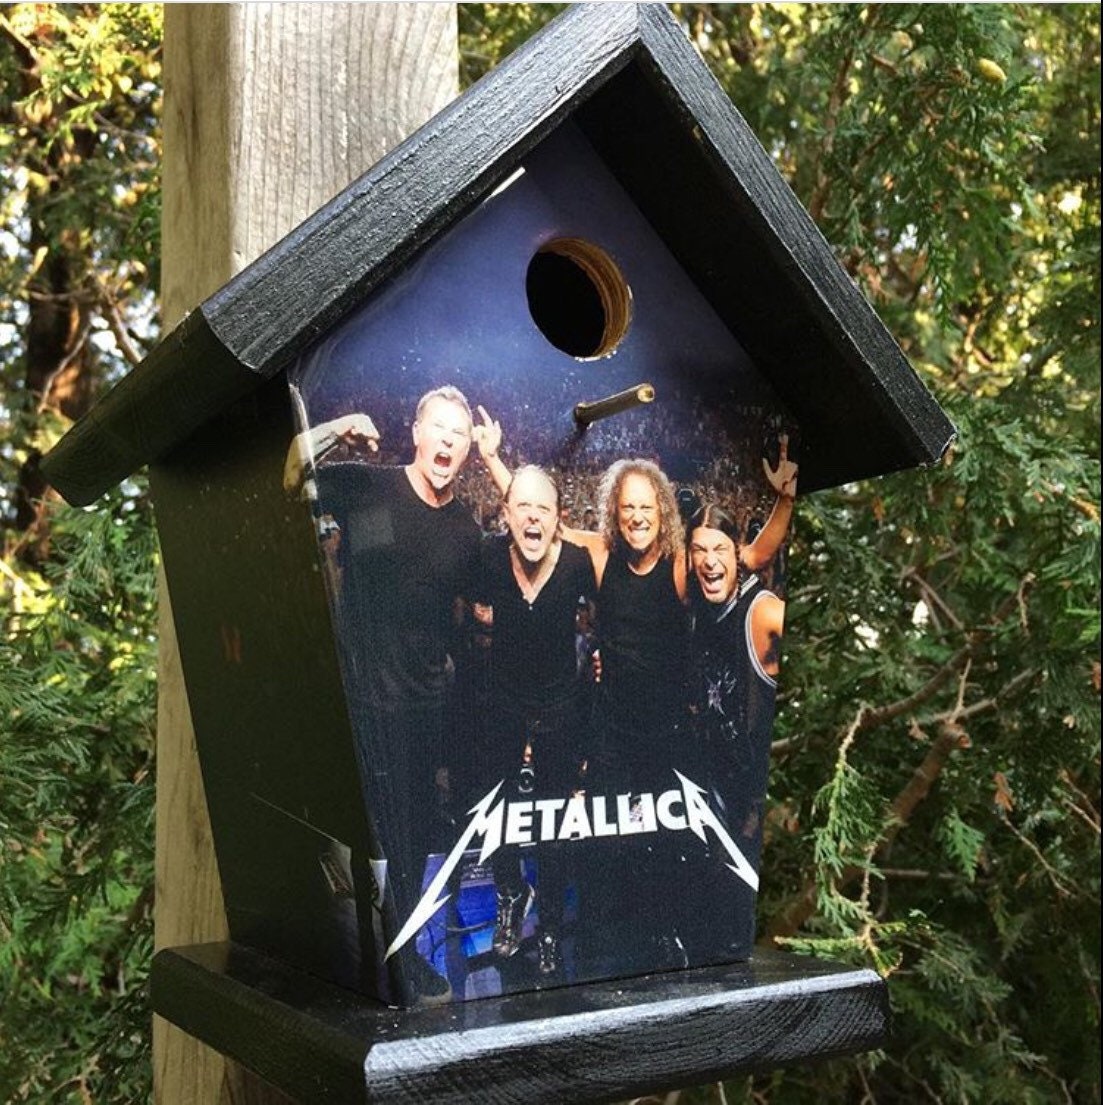 Metallica Birdhouse/Feeder